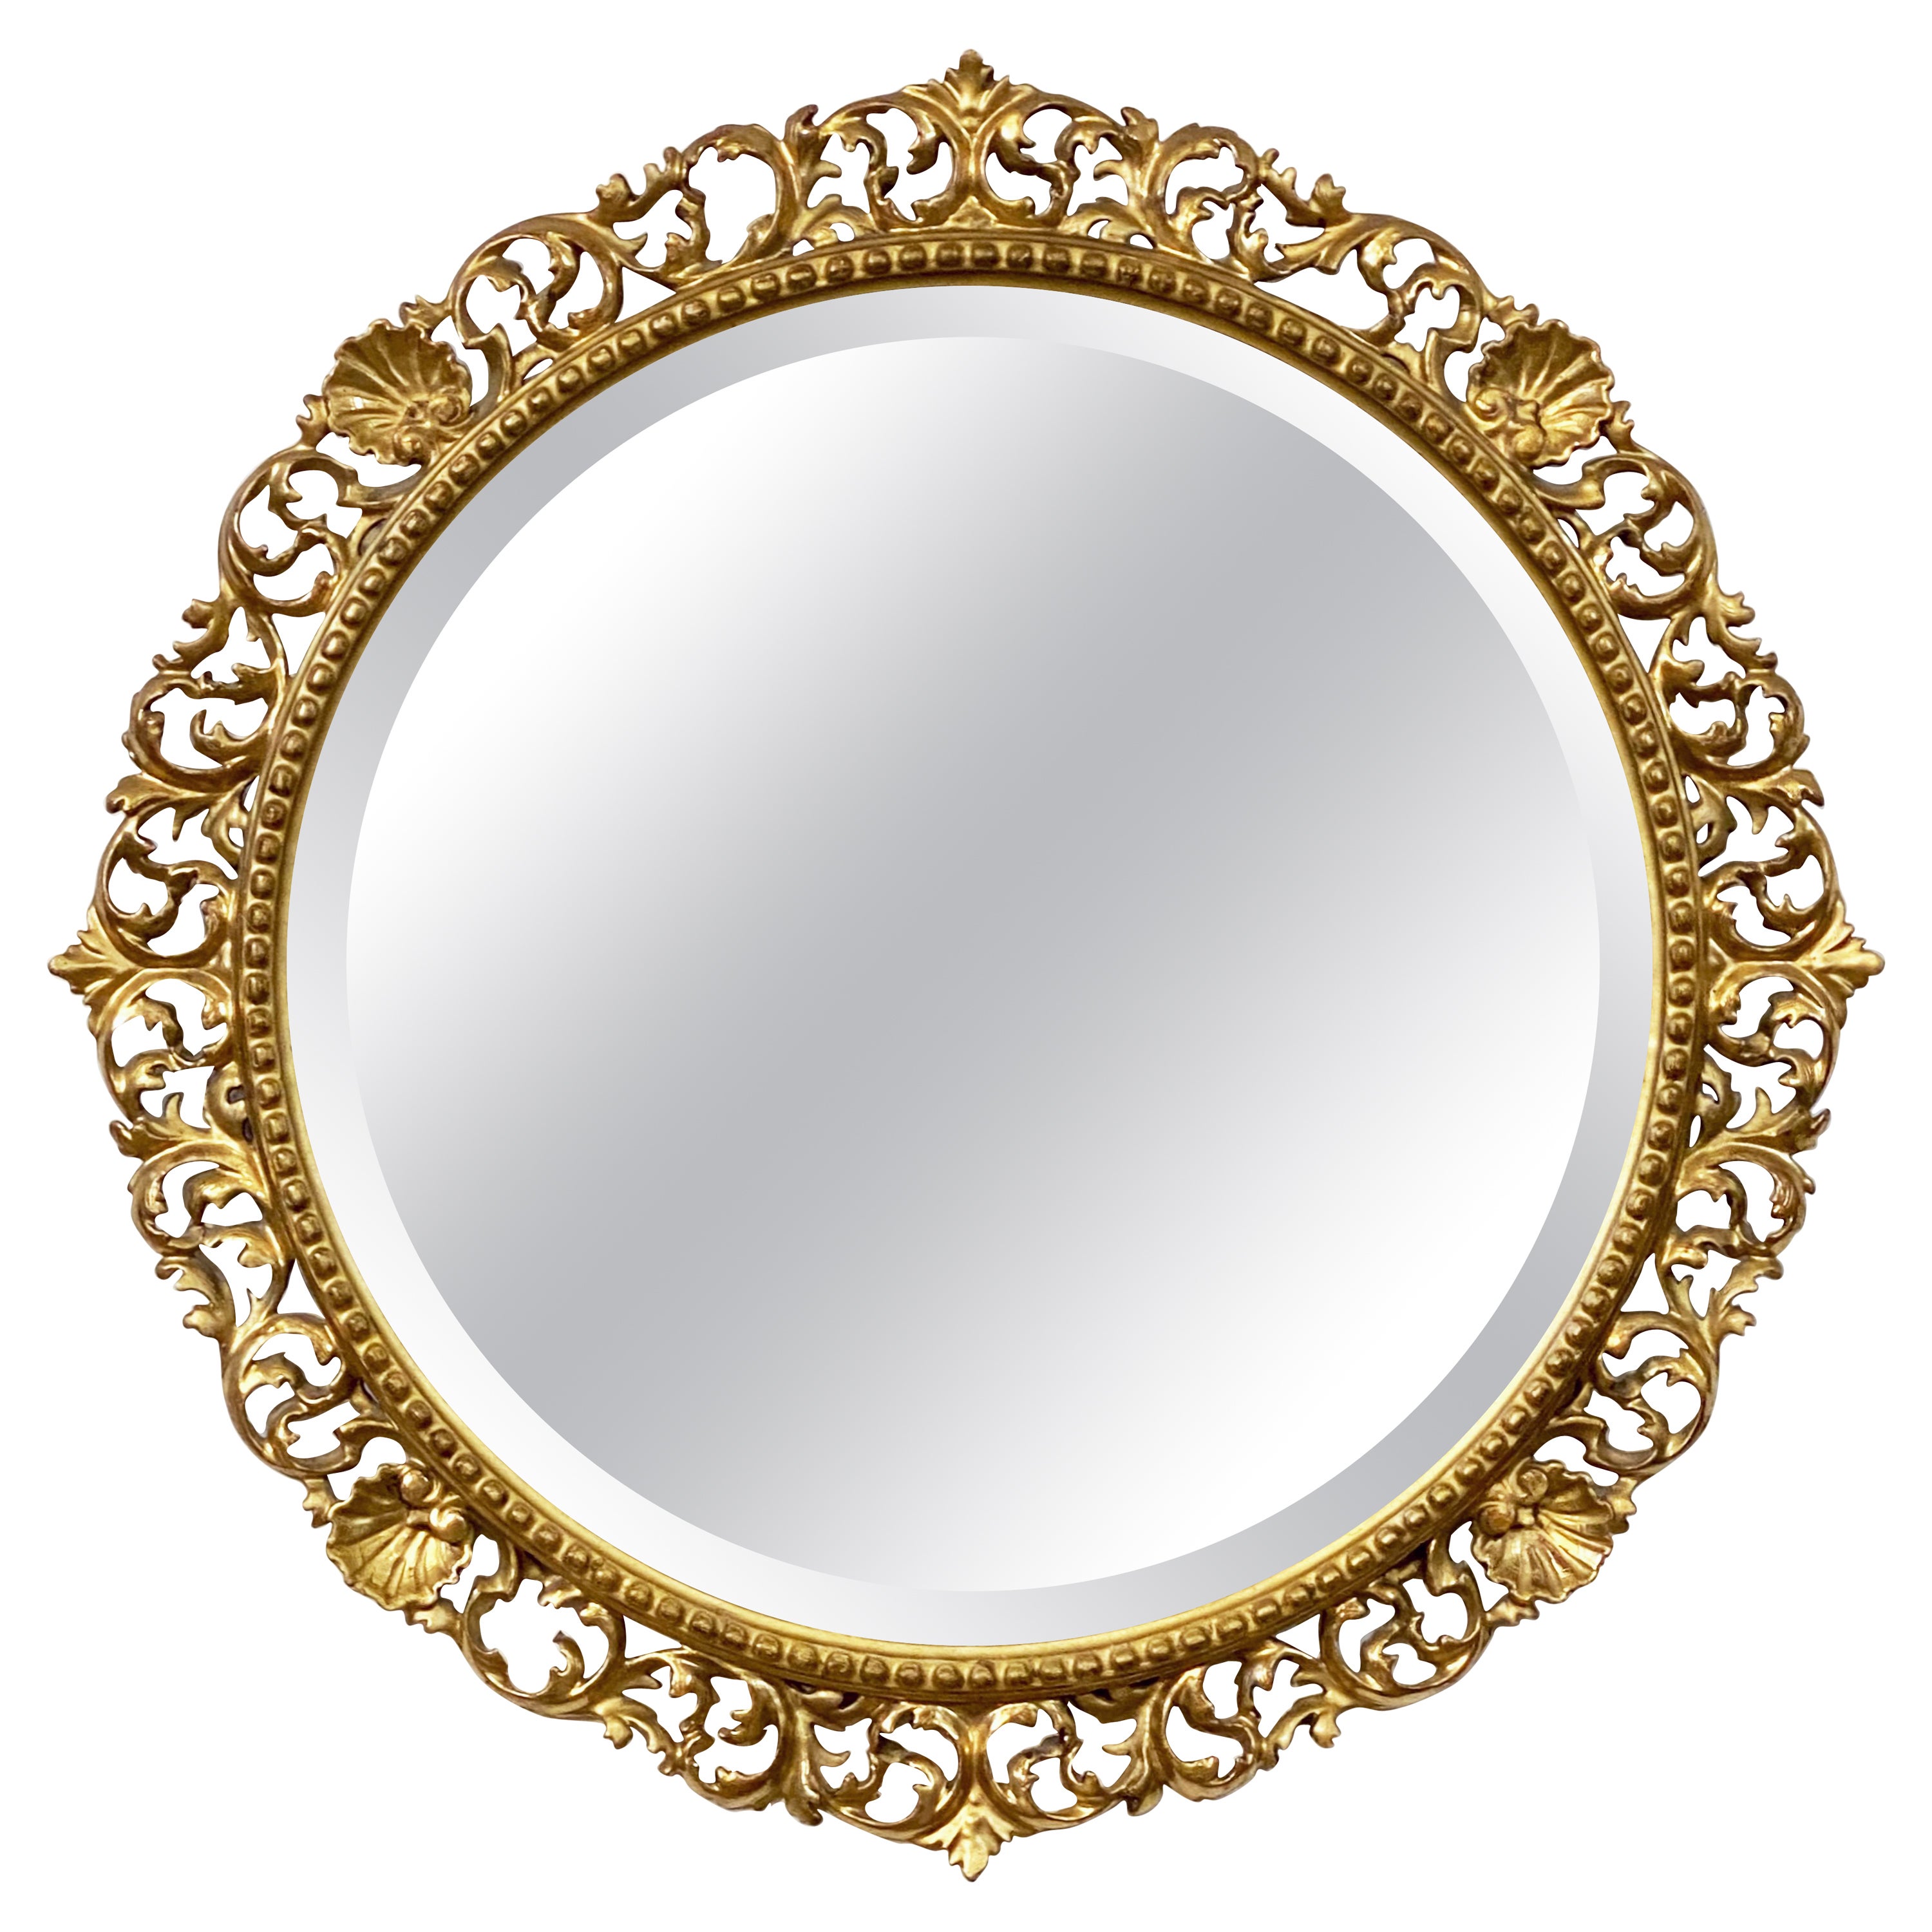 Grand miroir rond biseauté florentin doré italien (diamètre 27)